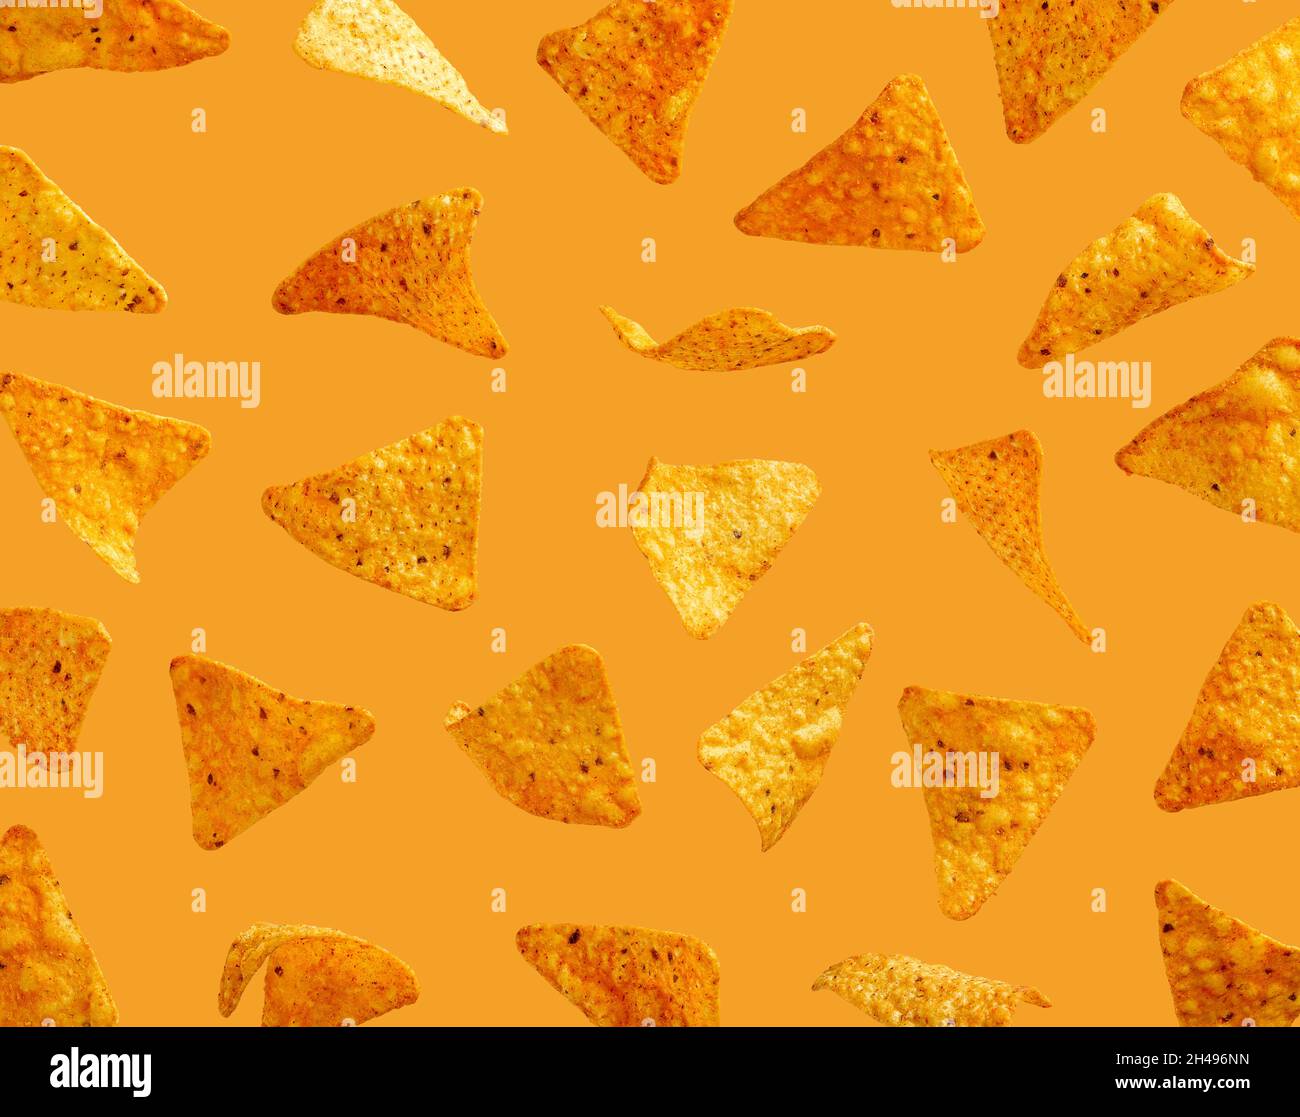 Grains de maïs nachos volant dans l'air sur fond orange Banque D'Images